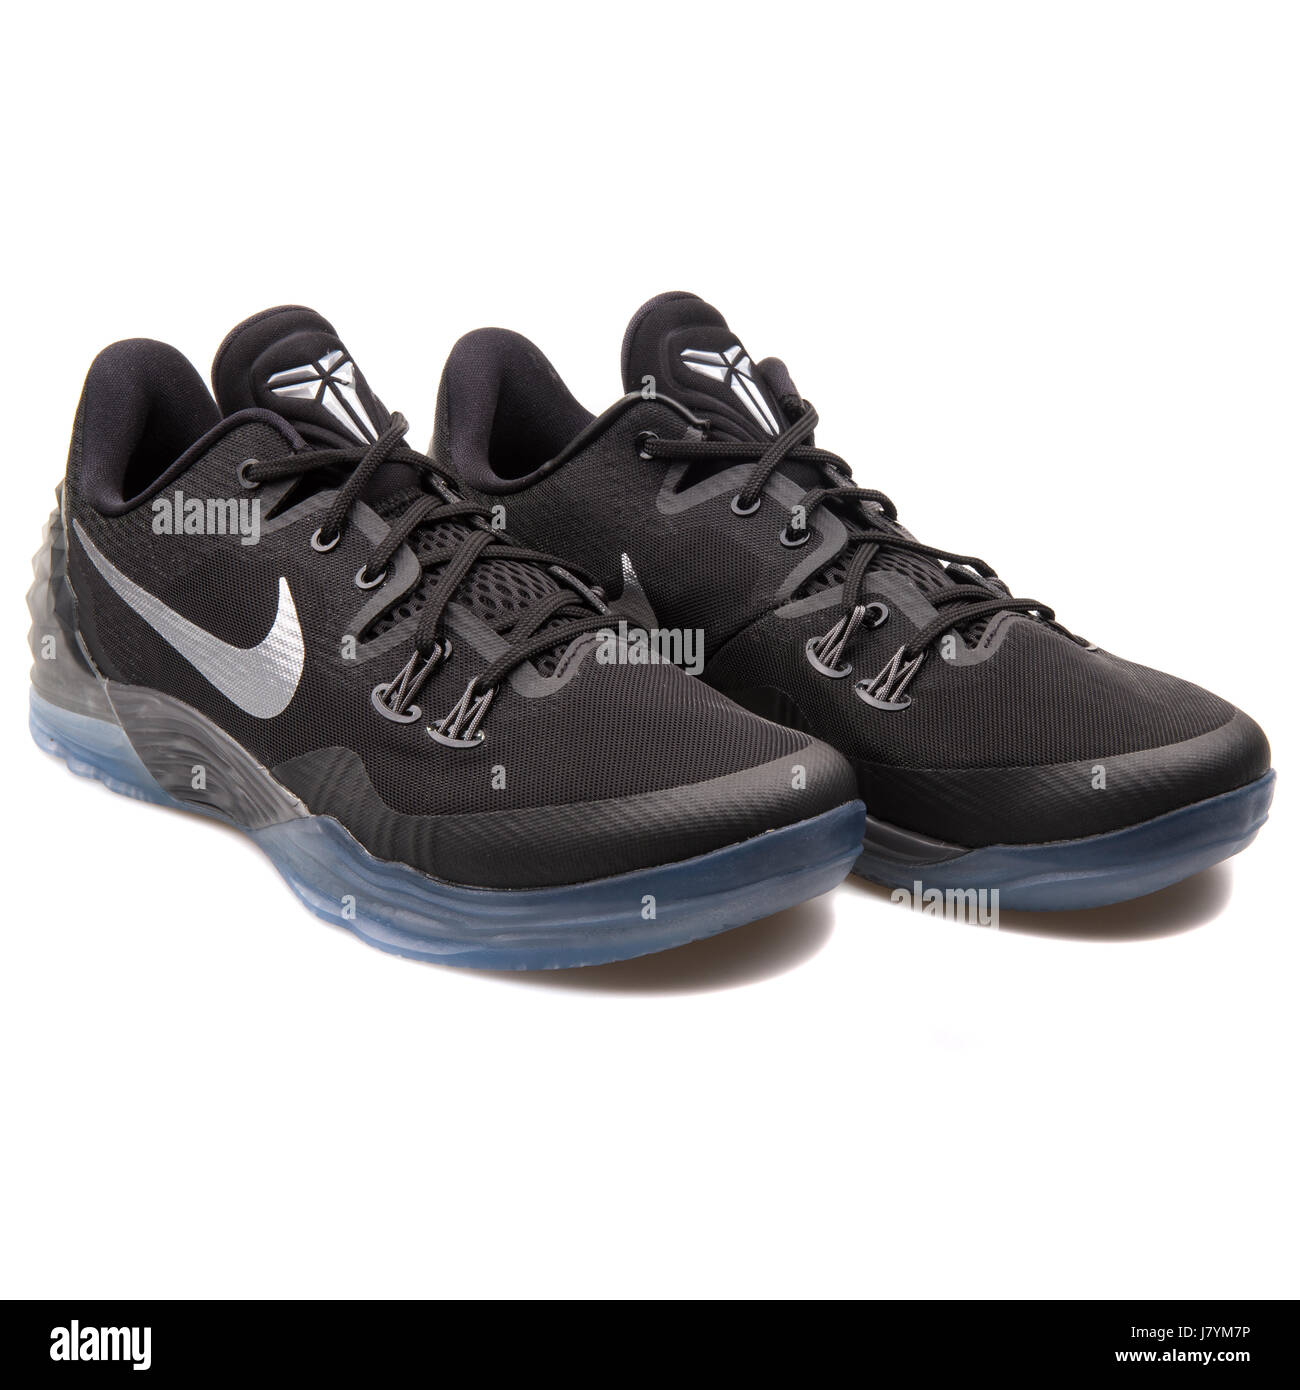 Nike Zoom Kobe Venomenon 5 Black Men's Basketball Sneakers - 749884-001  Stock Photo - Alamy